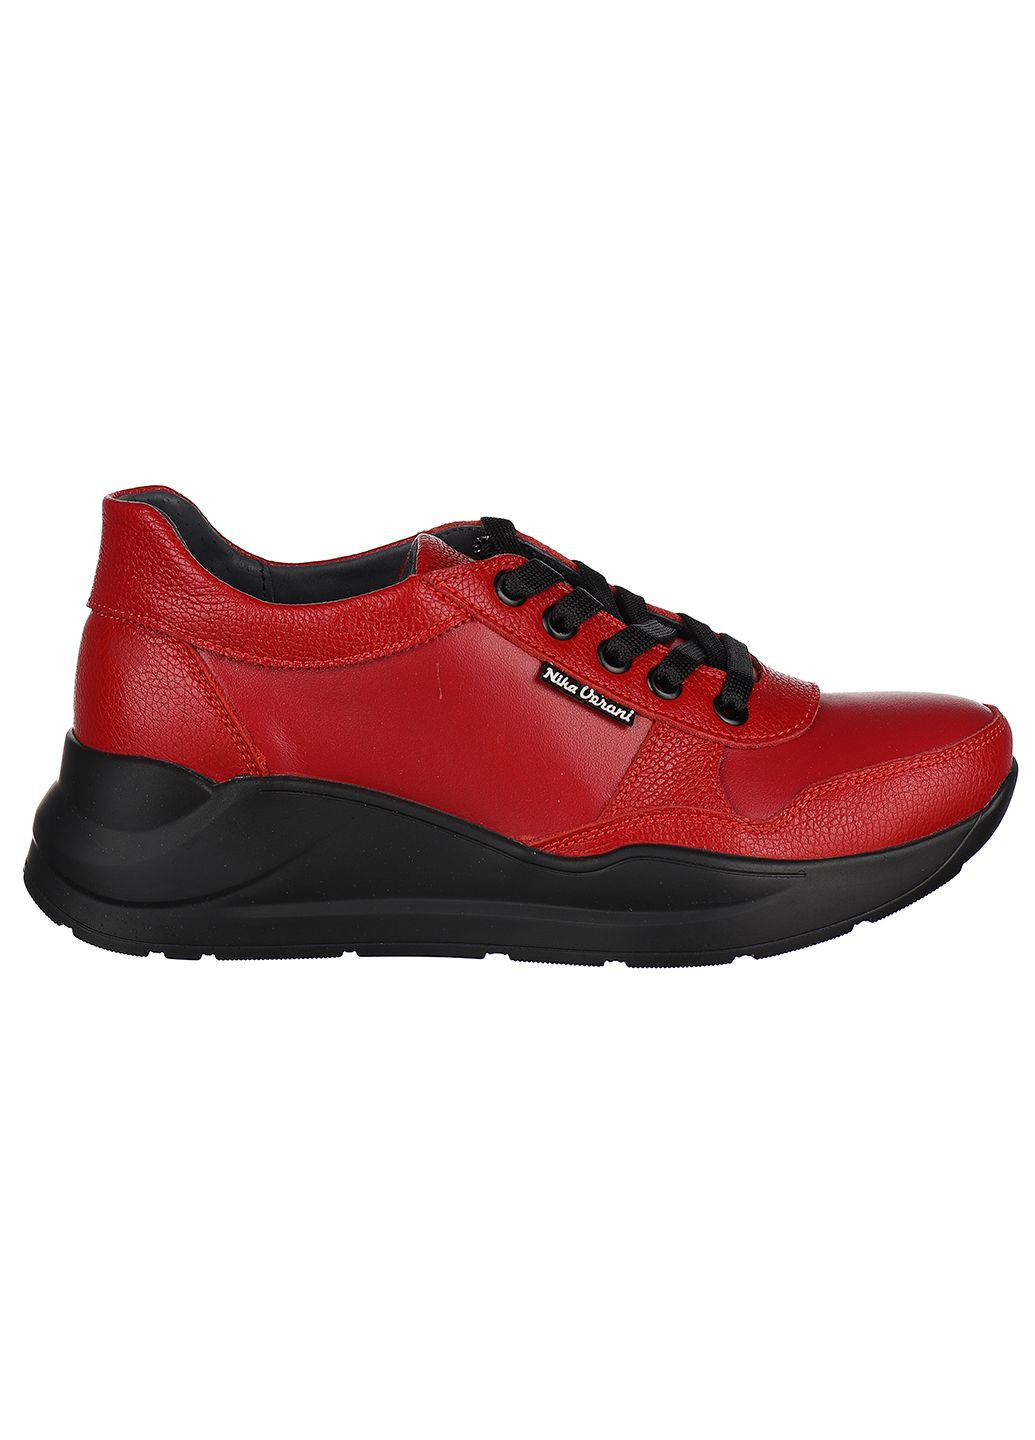 Червоні осінні жіночі кросівки 880 Nika Veroni